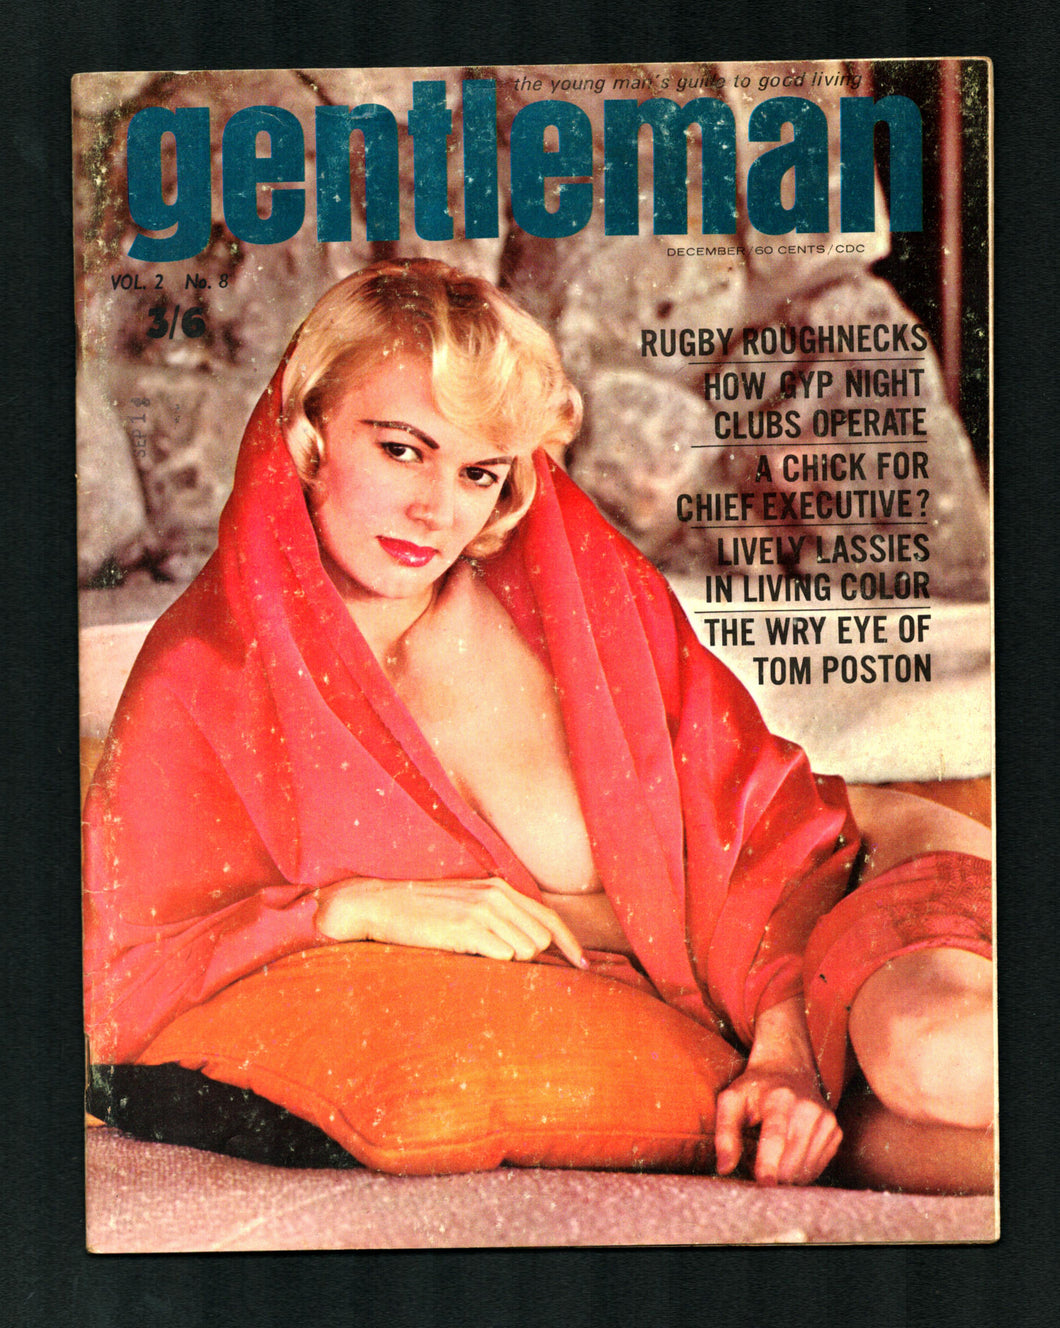 Gentleman Vol 4 No 3 Dec 1963